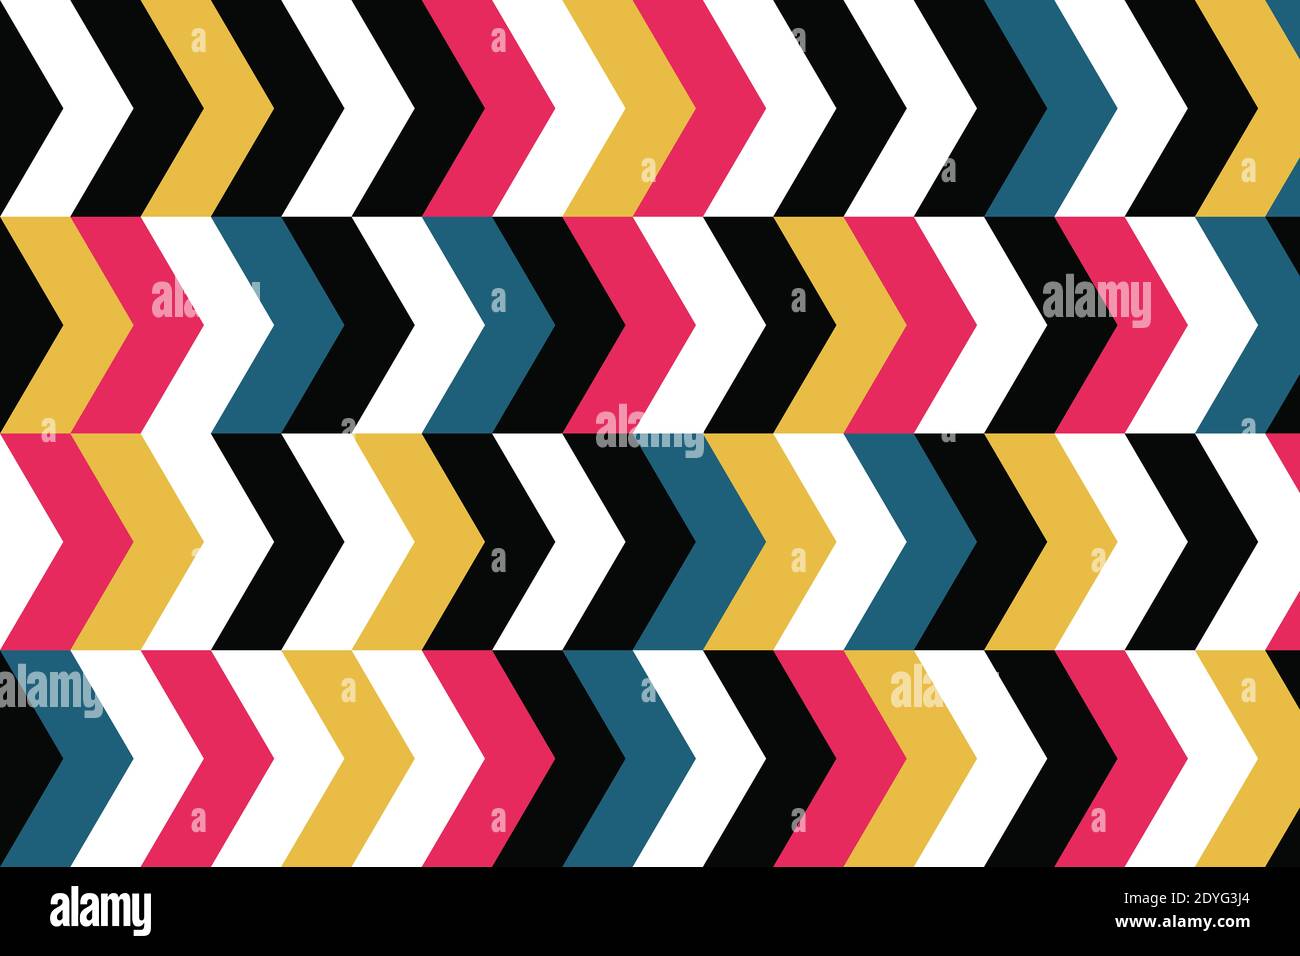 Schema di sfondo astratto realizzato con forme geometriche a forma di chevron. Arte vettoriale vivace, moderna e colorata nei colori rosso, blu, giallo e nero. Foto Stock